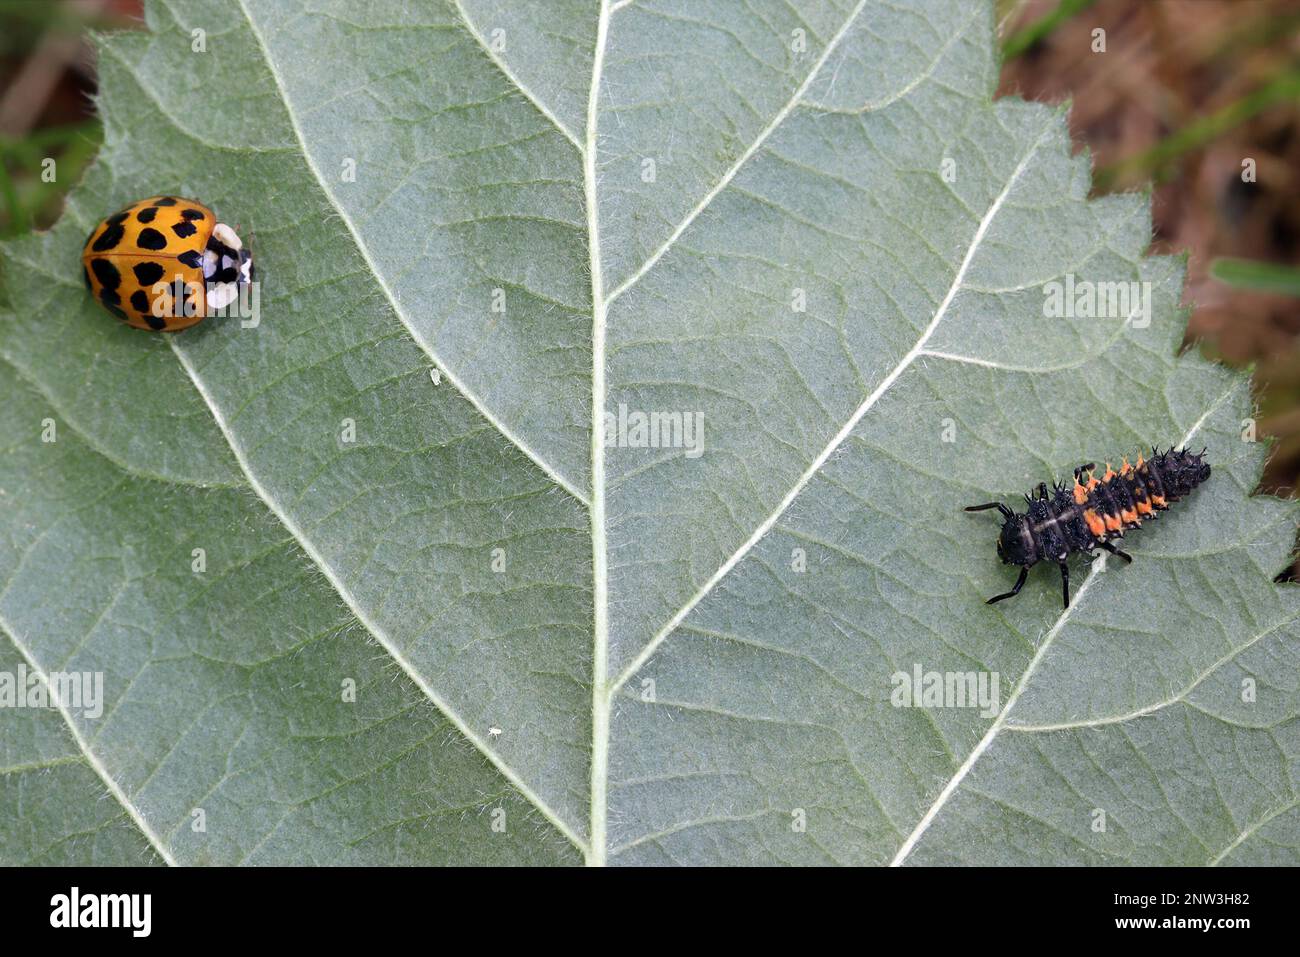 Ein orangefarbener Marienkäfer mit 19 Flecken und eine Marienkäfer-Larve sitzen auf einem Blatt. Zwei kleine Blattläuse sind dazwischen. Harmonia axyridis, auch bekannt als die Harlekin. Stockfoto